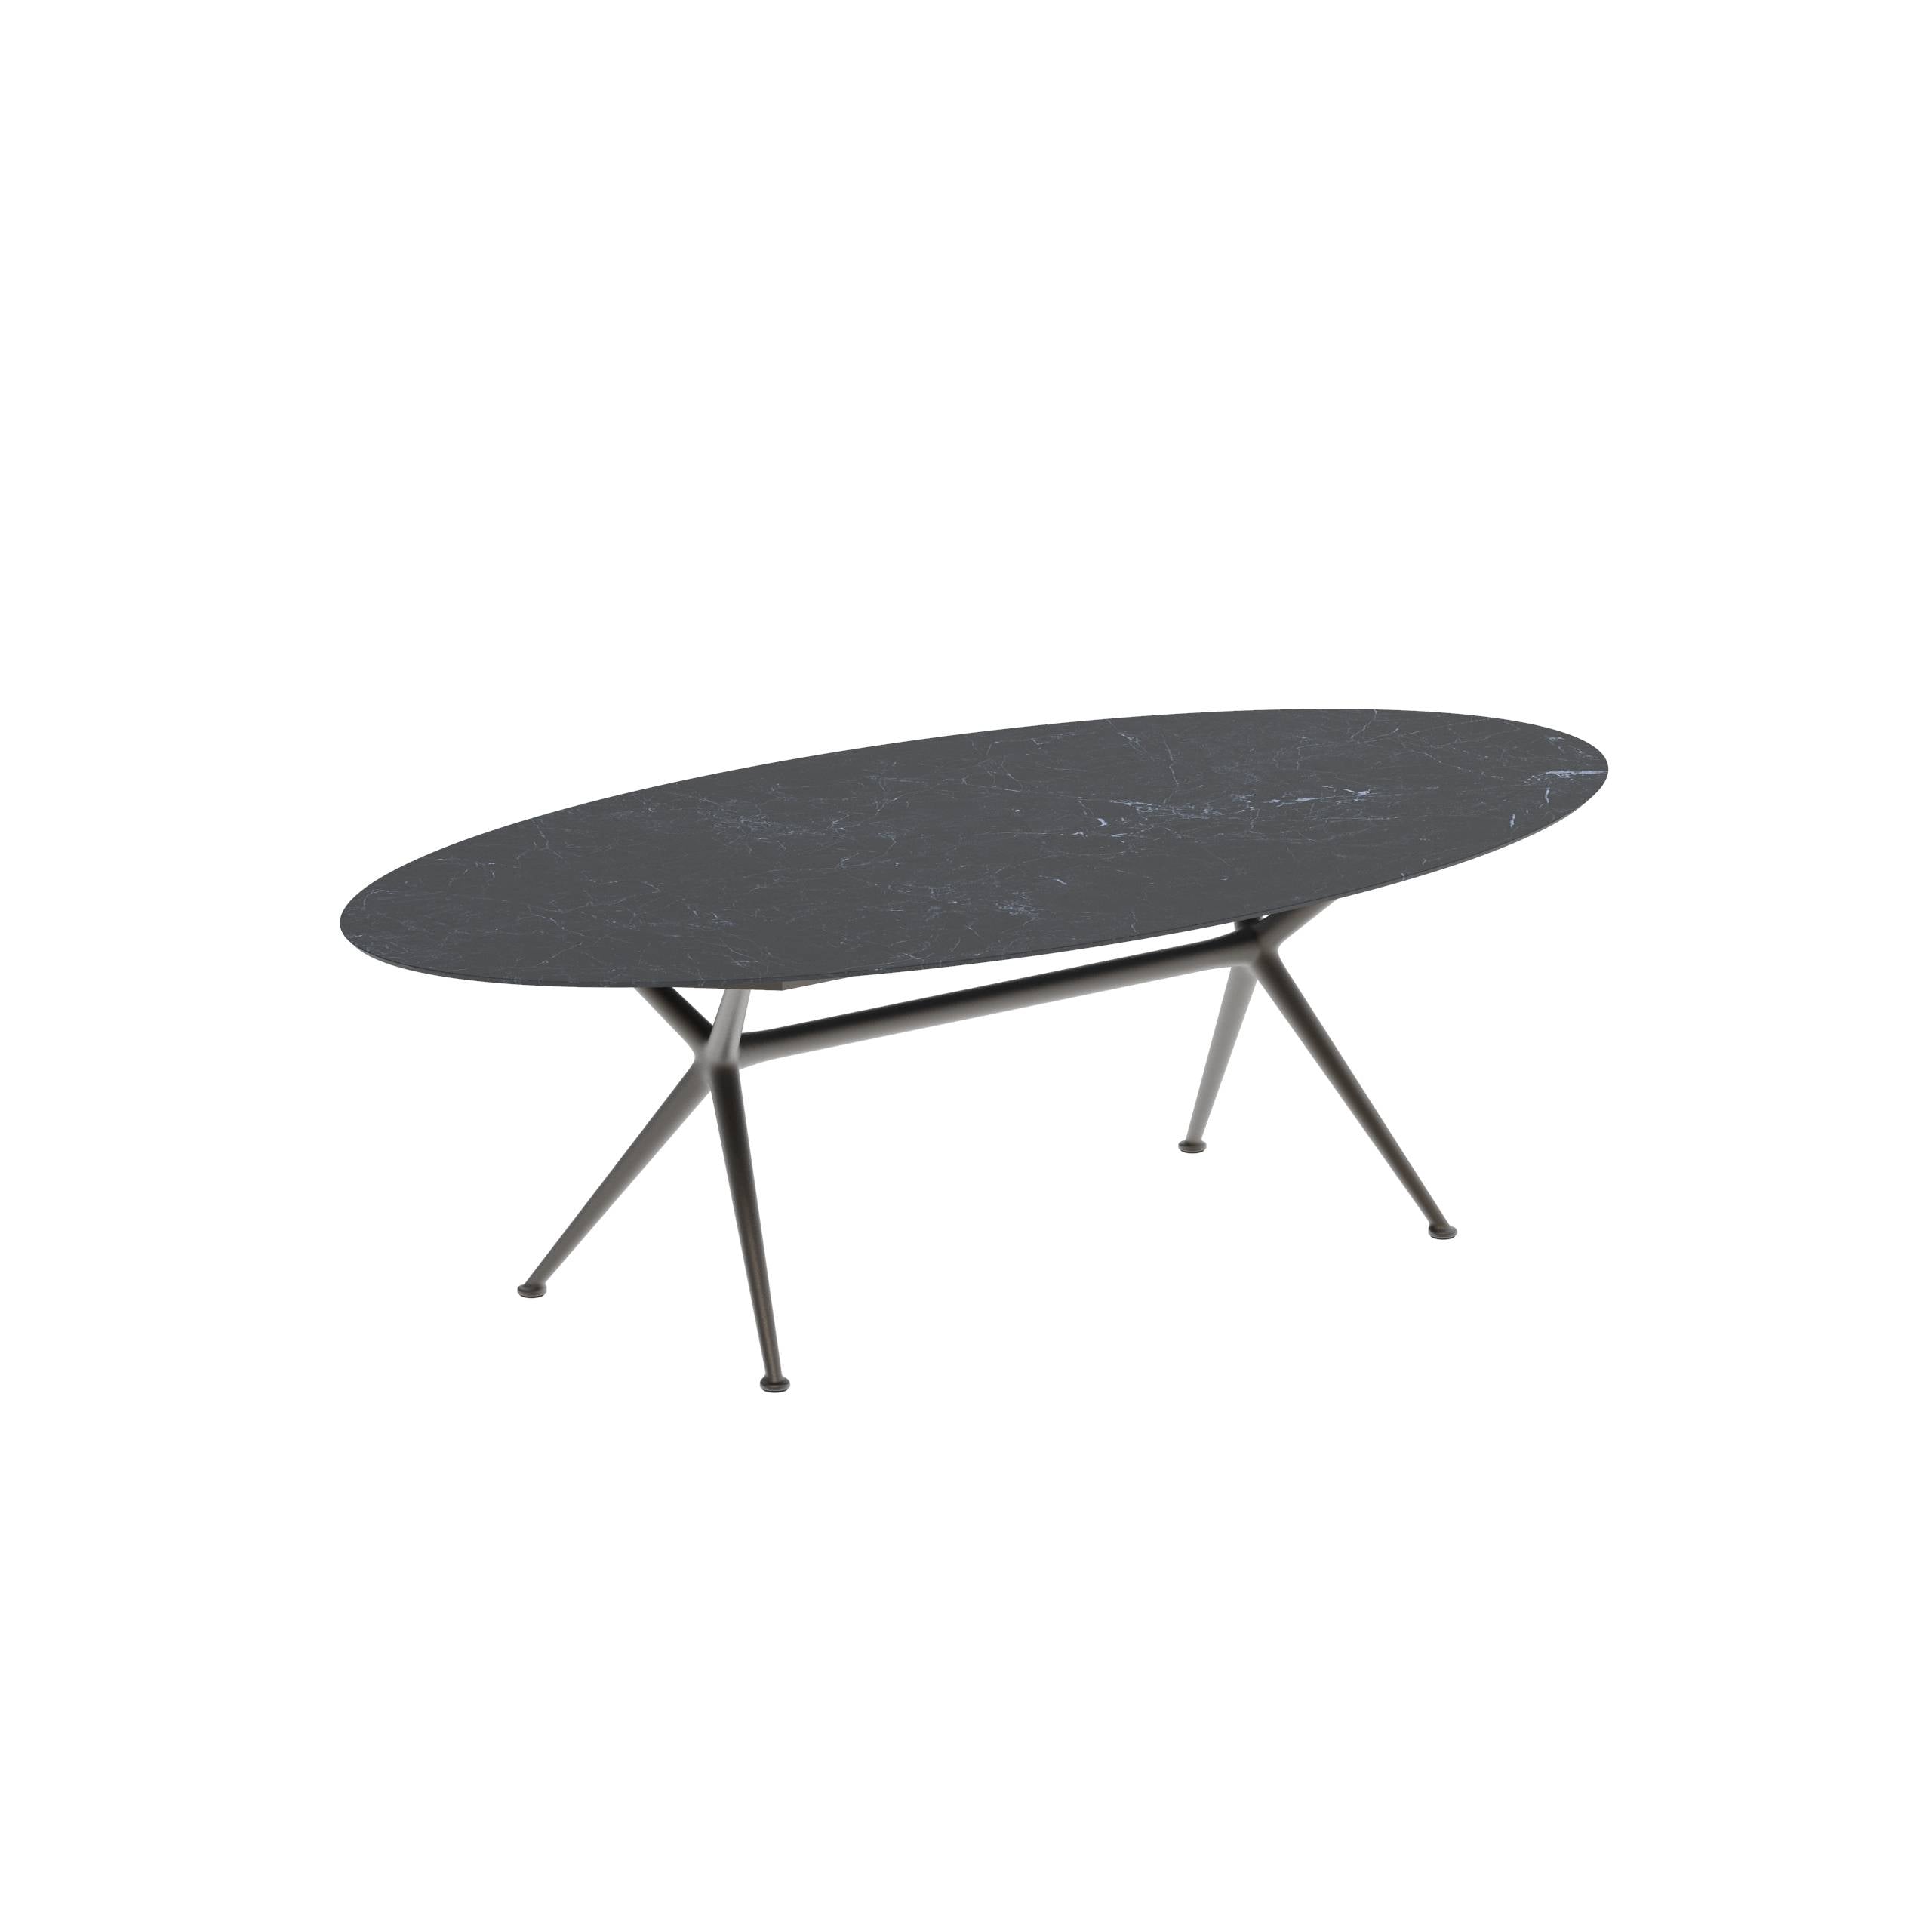 Exes Table Ellipse 250x130cm Alu Legs Bronze - Table Top Ceramic Nero Marquina